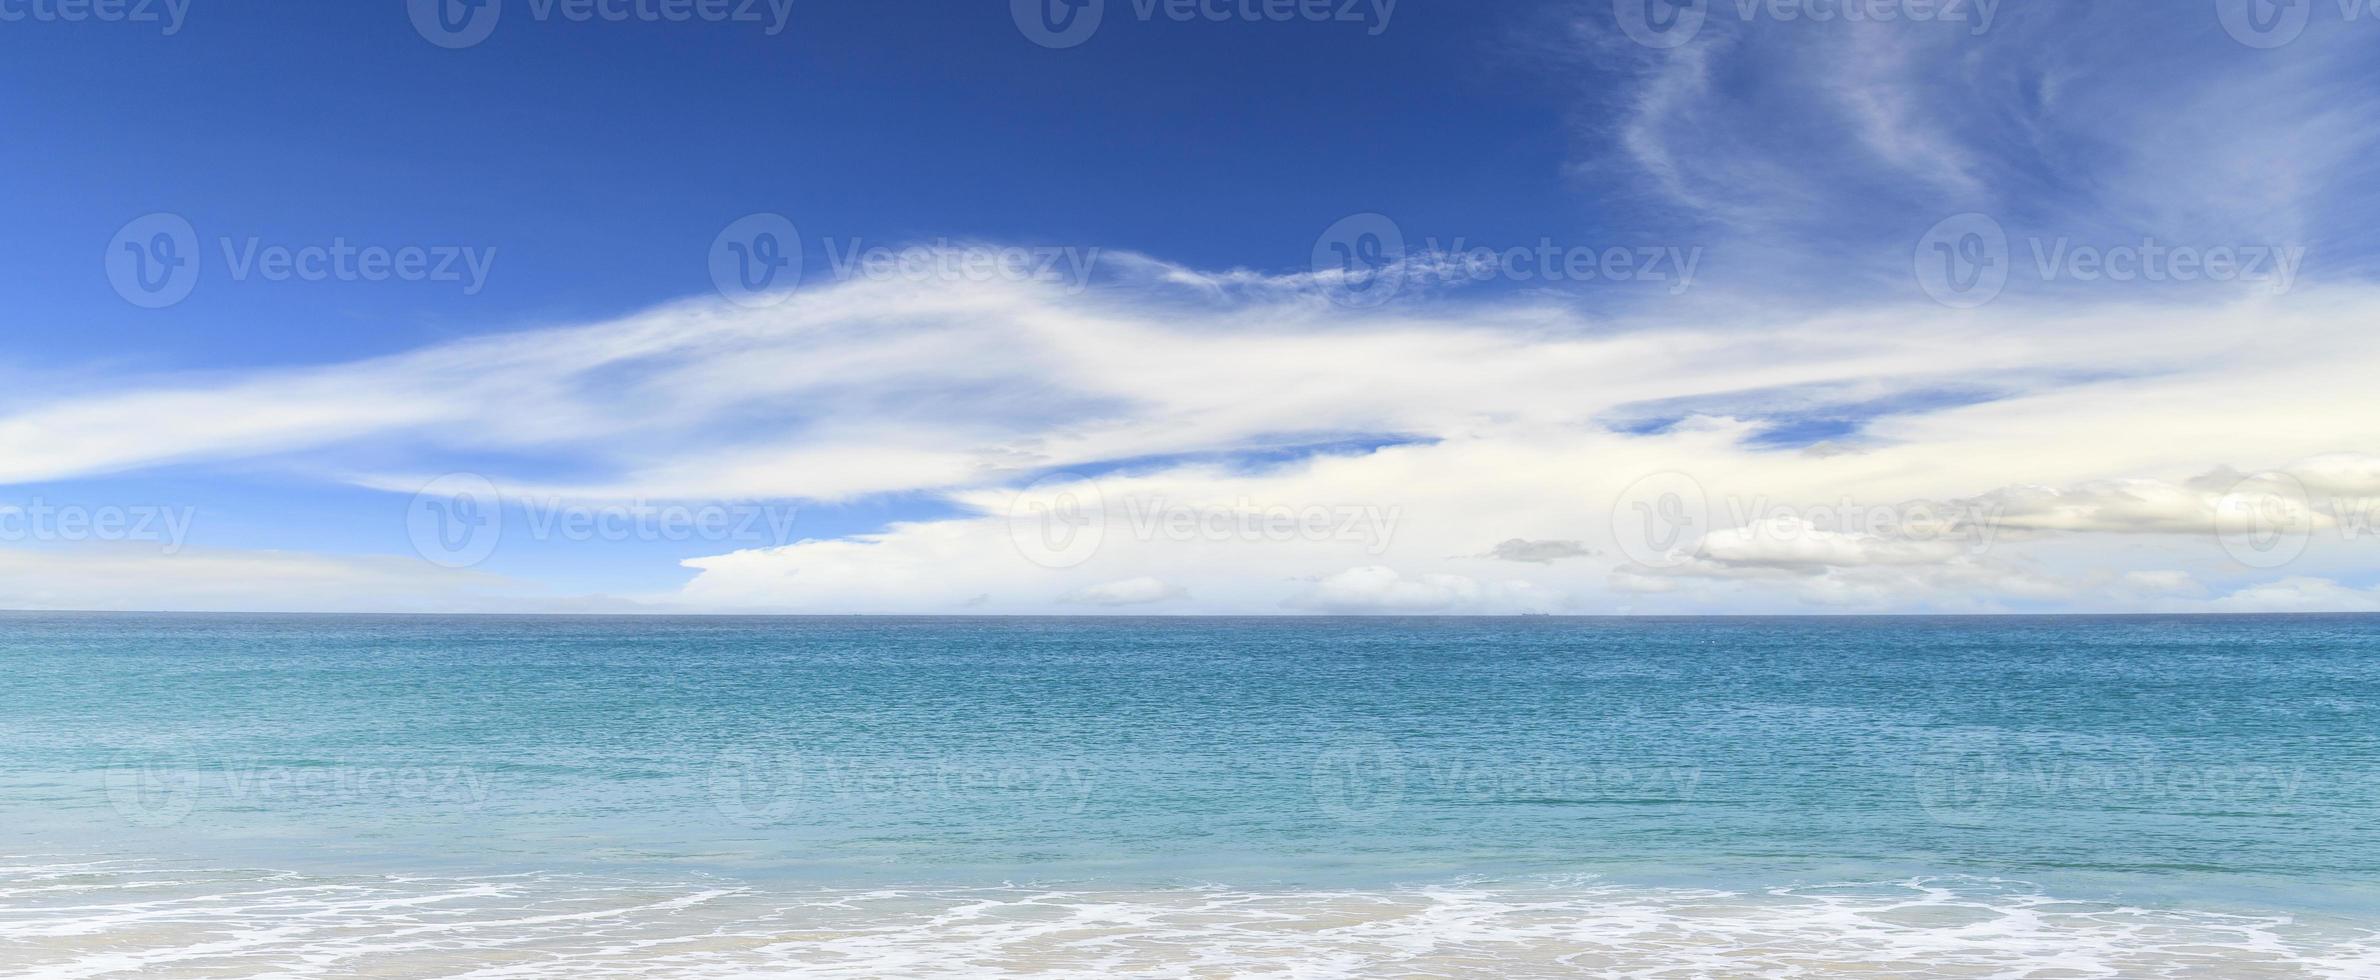 sandstrand och blått hav foto